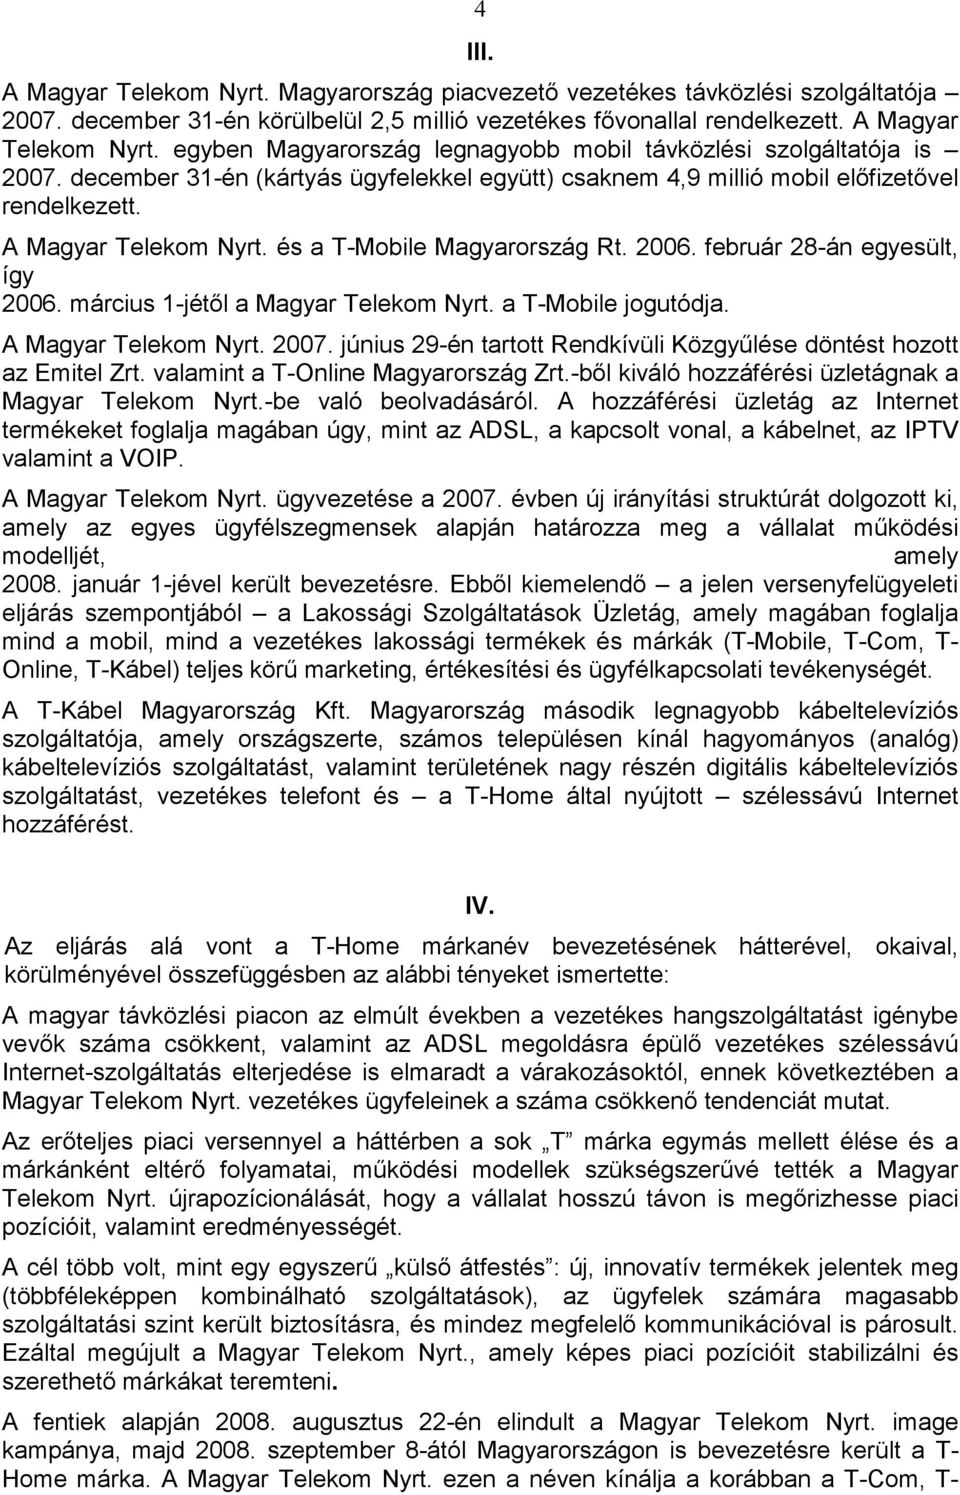 március 1-jétıl a Magyar Telekom Nyrt. a T-Mobile jogutódja. A Magyar Telekom Nyrt. 2007. június 29-én tartott Rendkívüli Közgyőlése döntést hozott az Emitel Zrt. valamint a T-Online Magyarország Zrt.